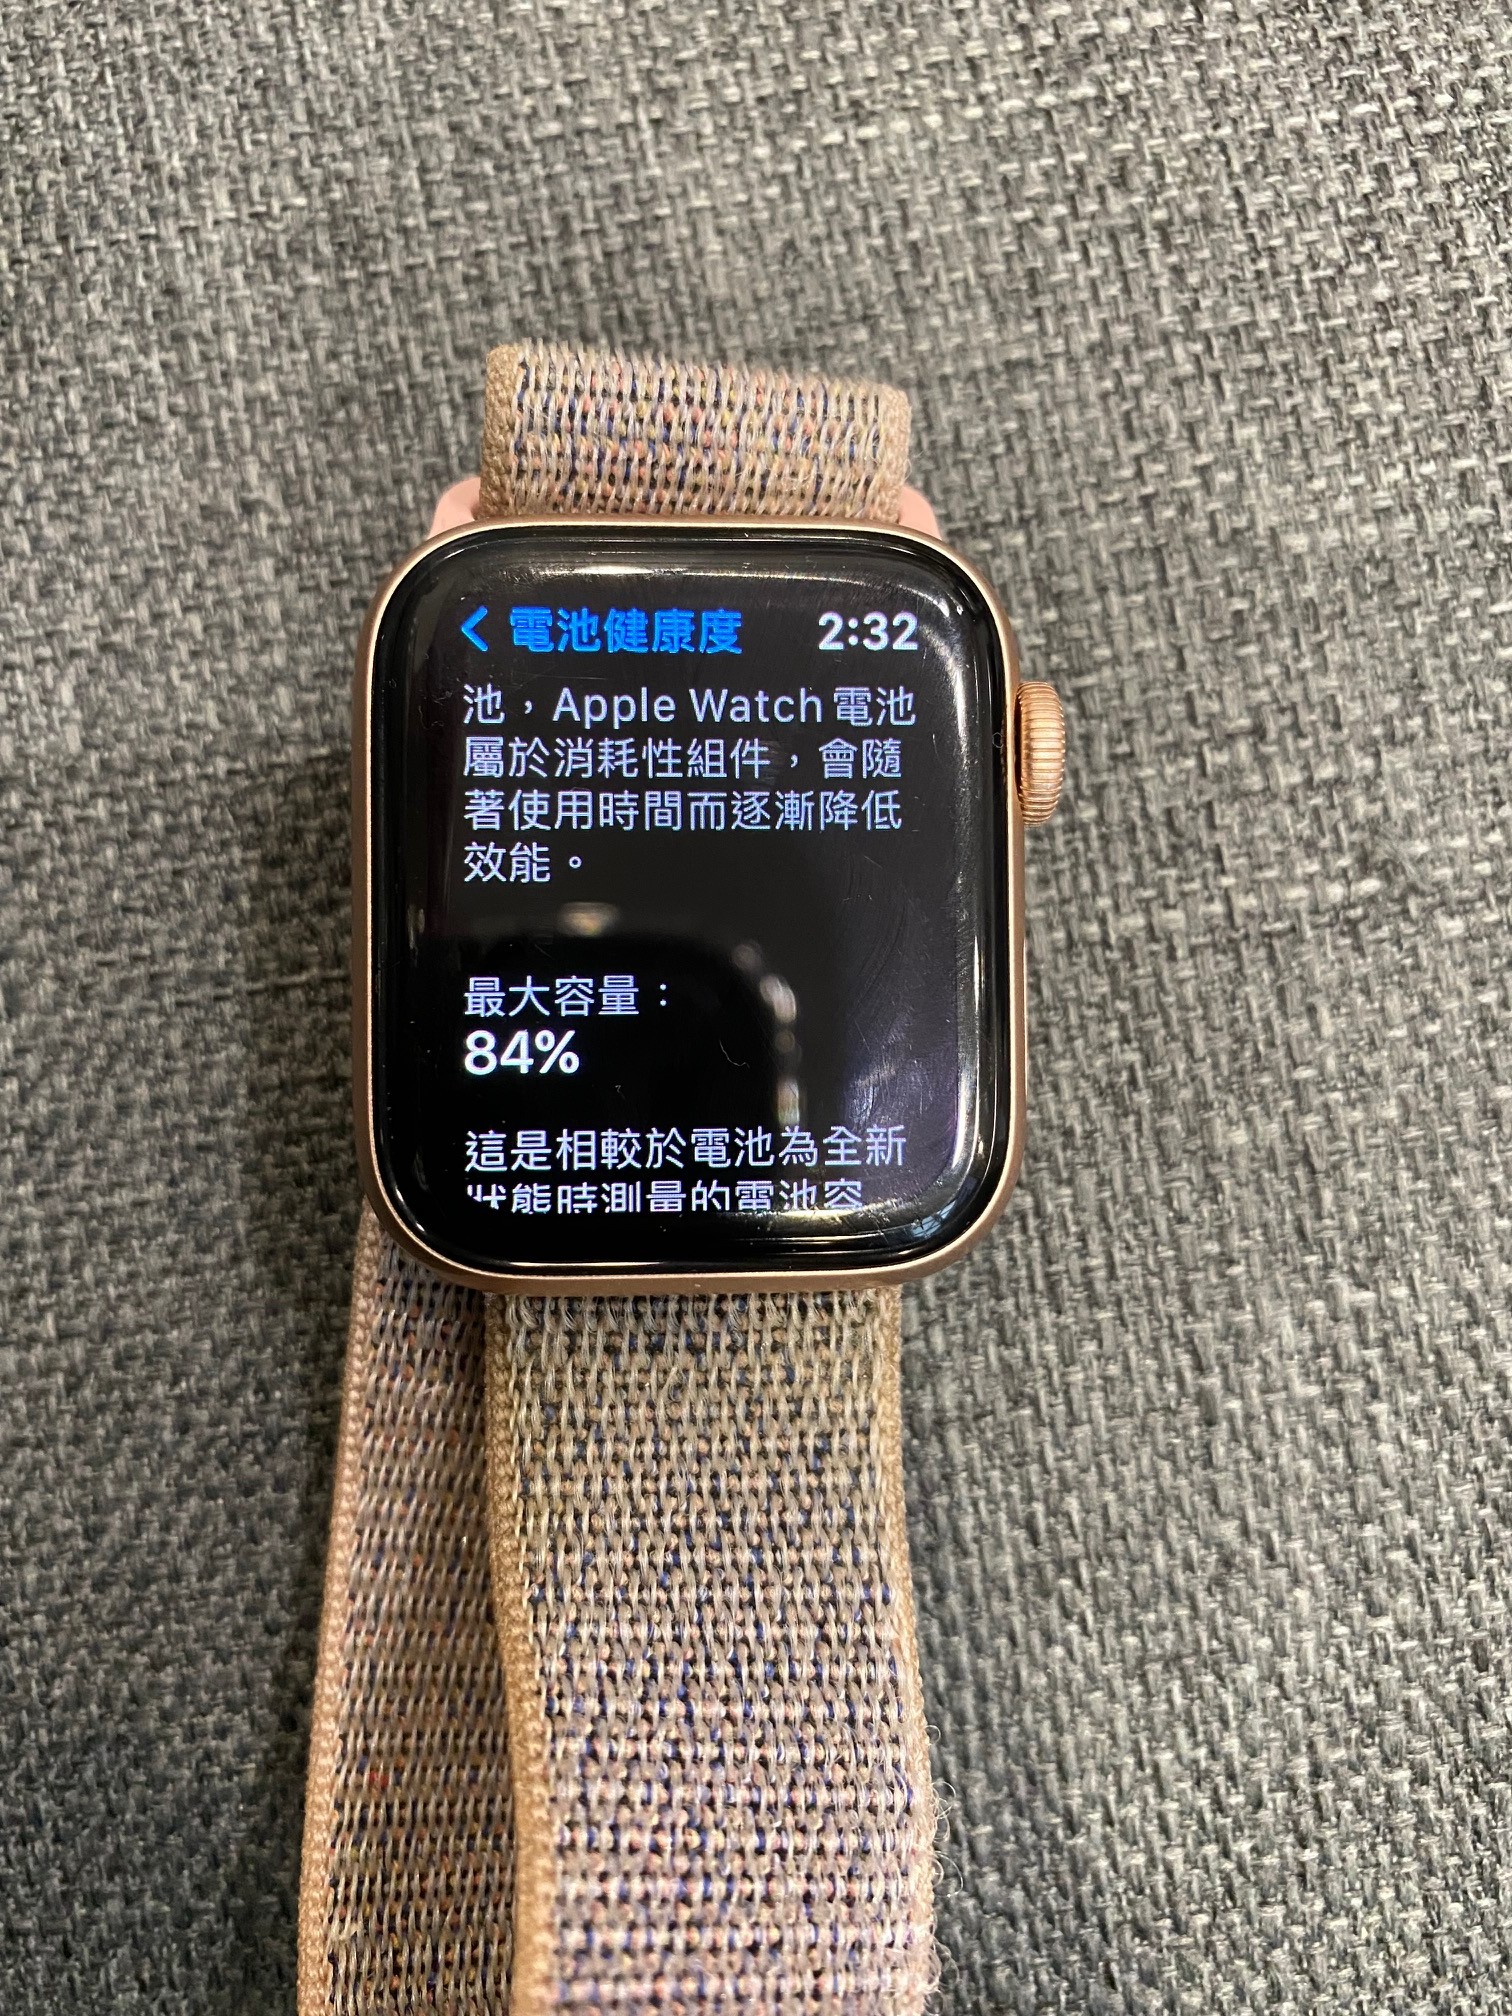 [交易] apple watch s4 & Poco X3 pro 6g/128g